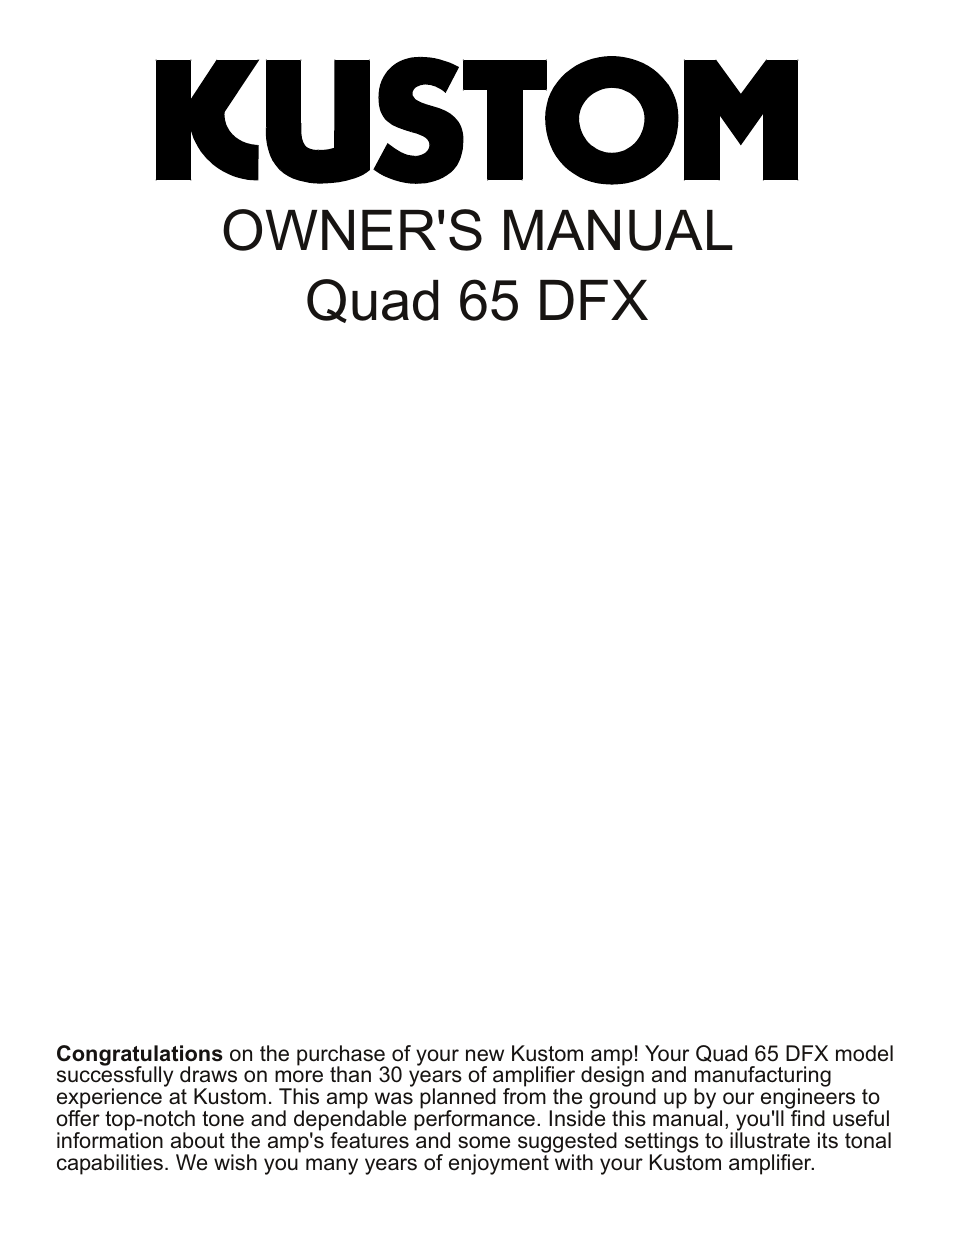 Quad 65 DFX